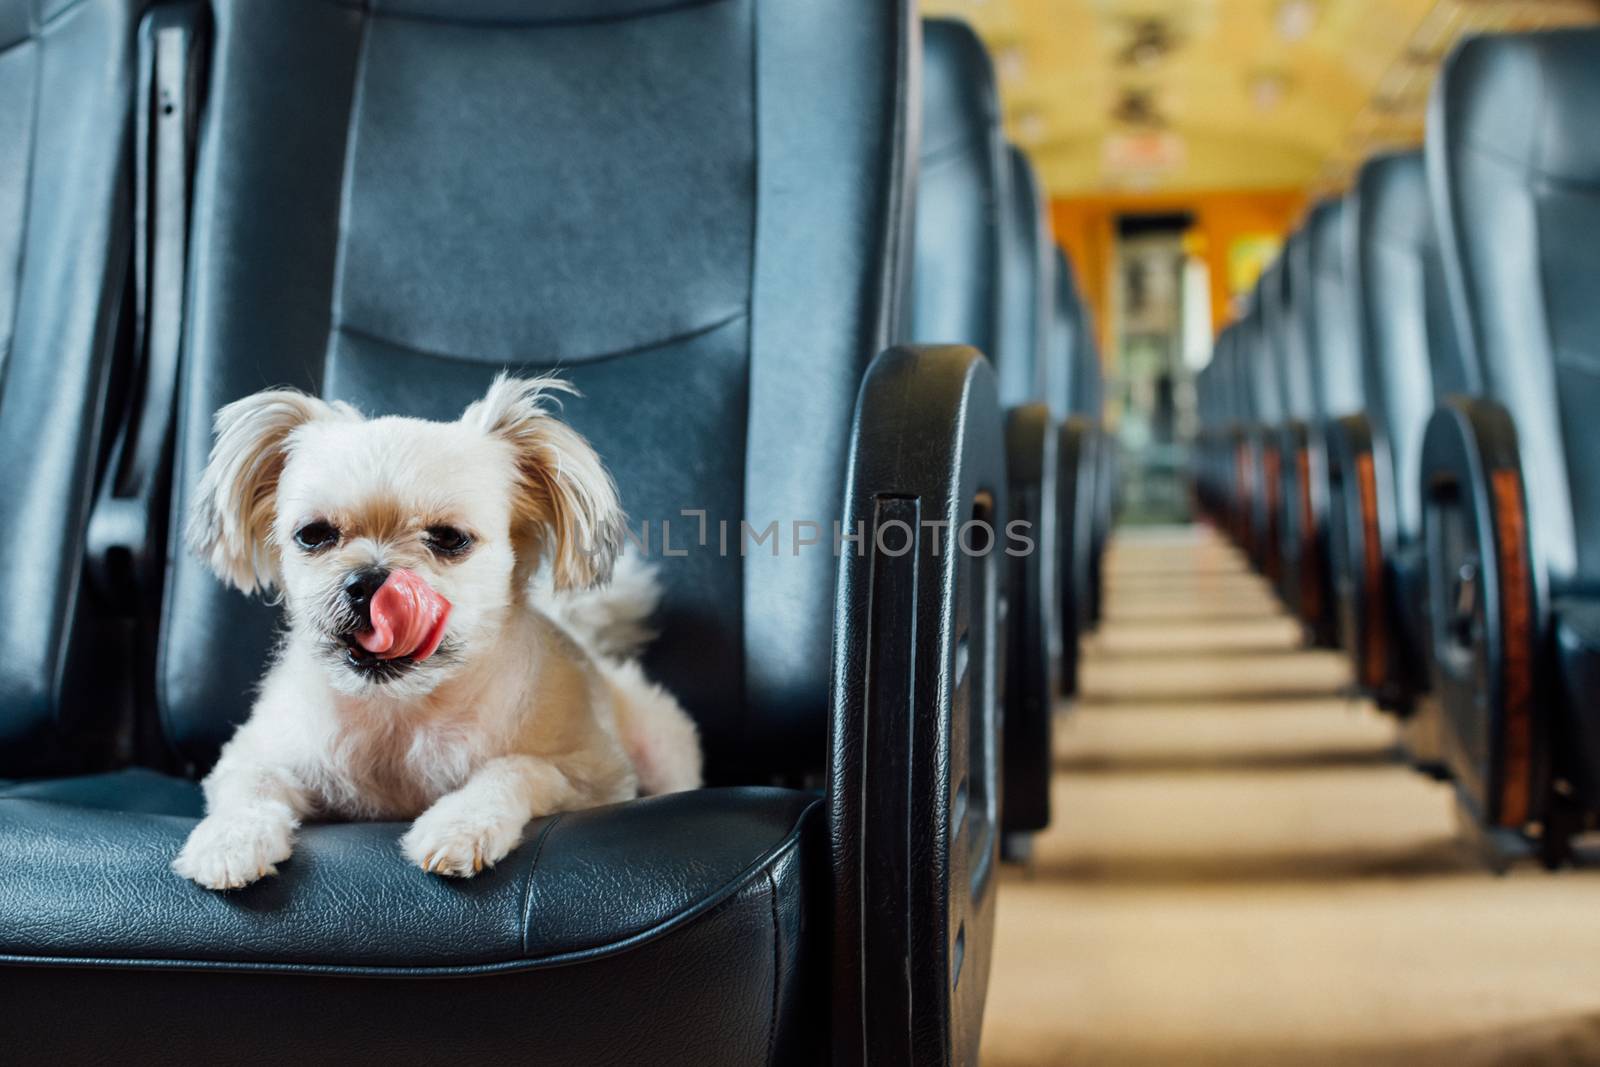 Dog so cute inside a railway train wait for travel by PongMoji